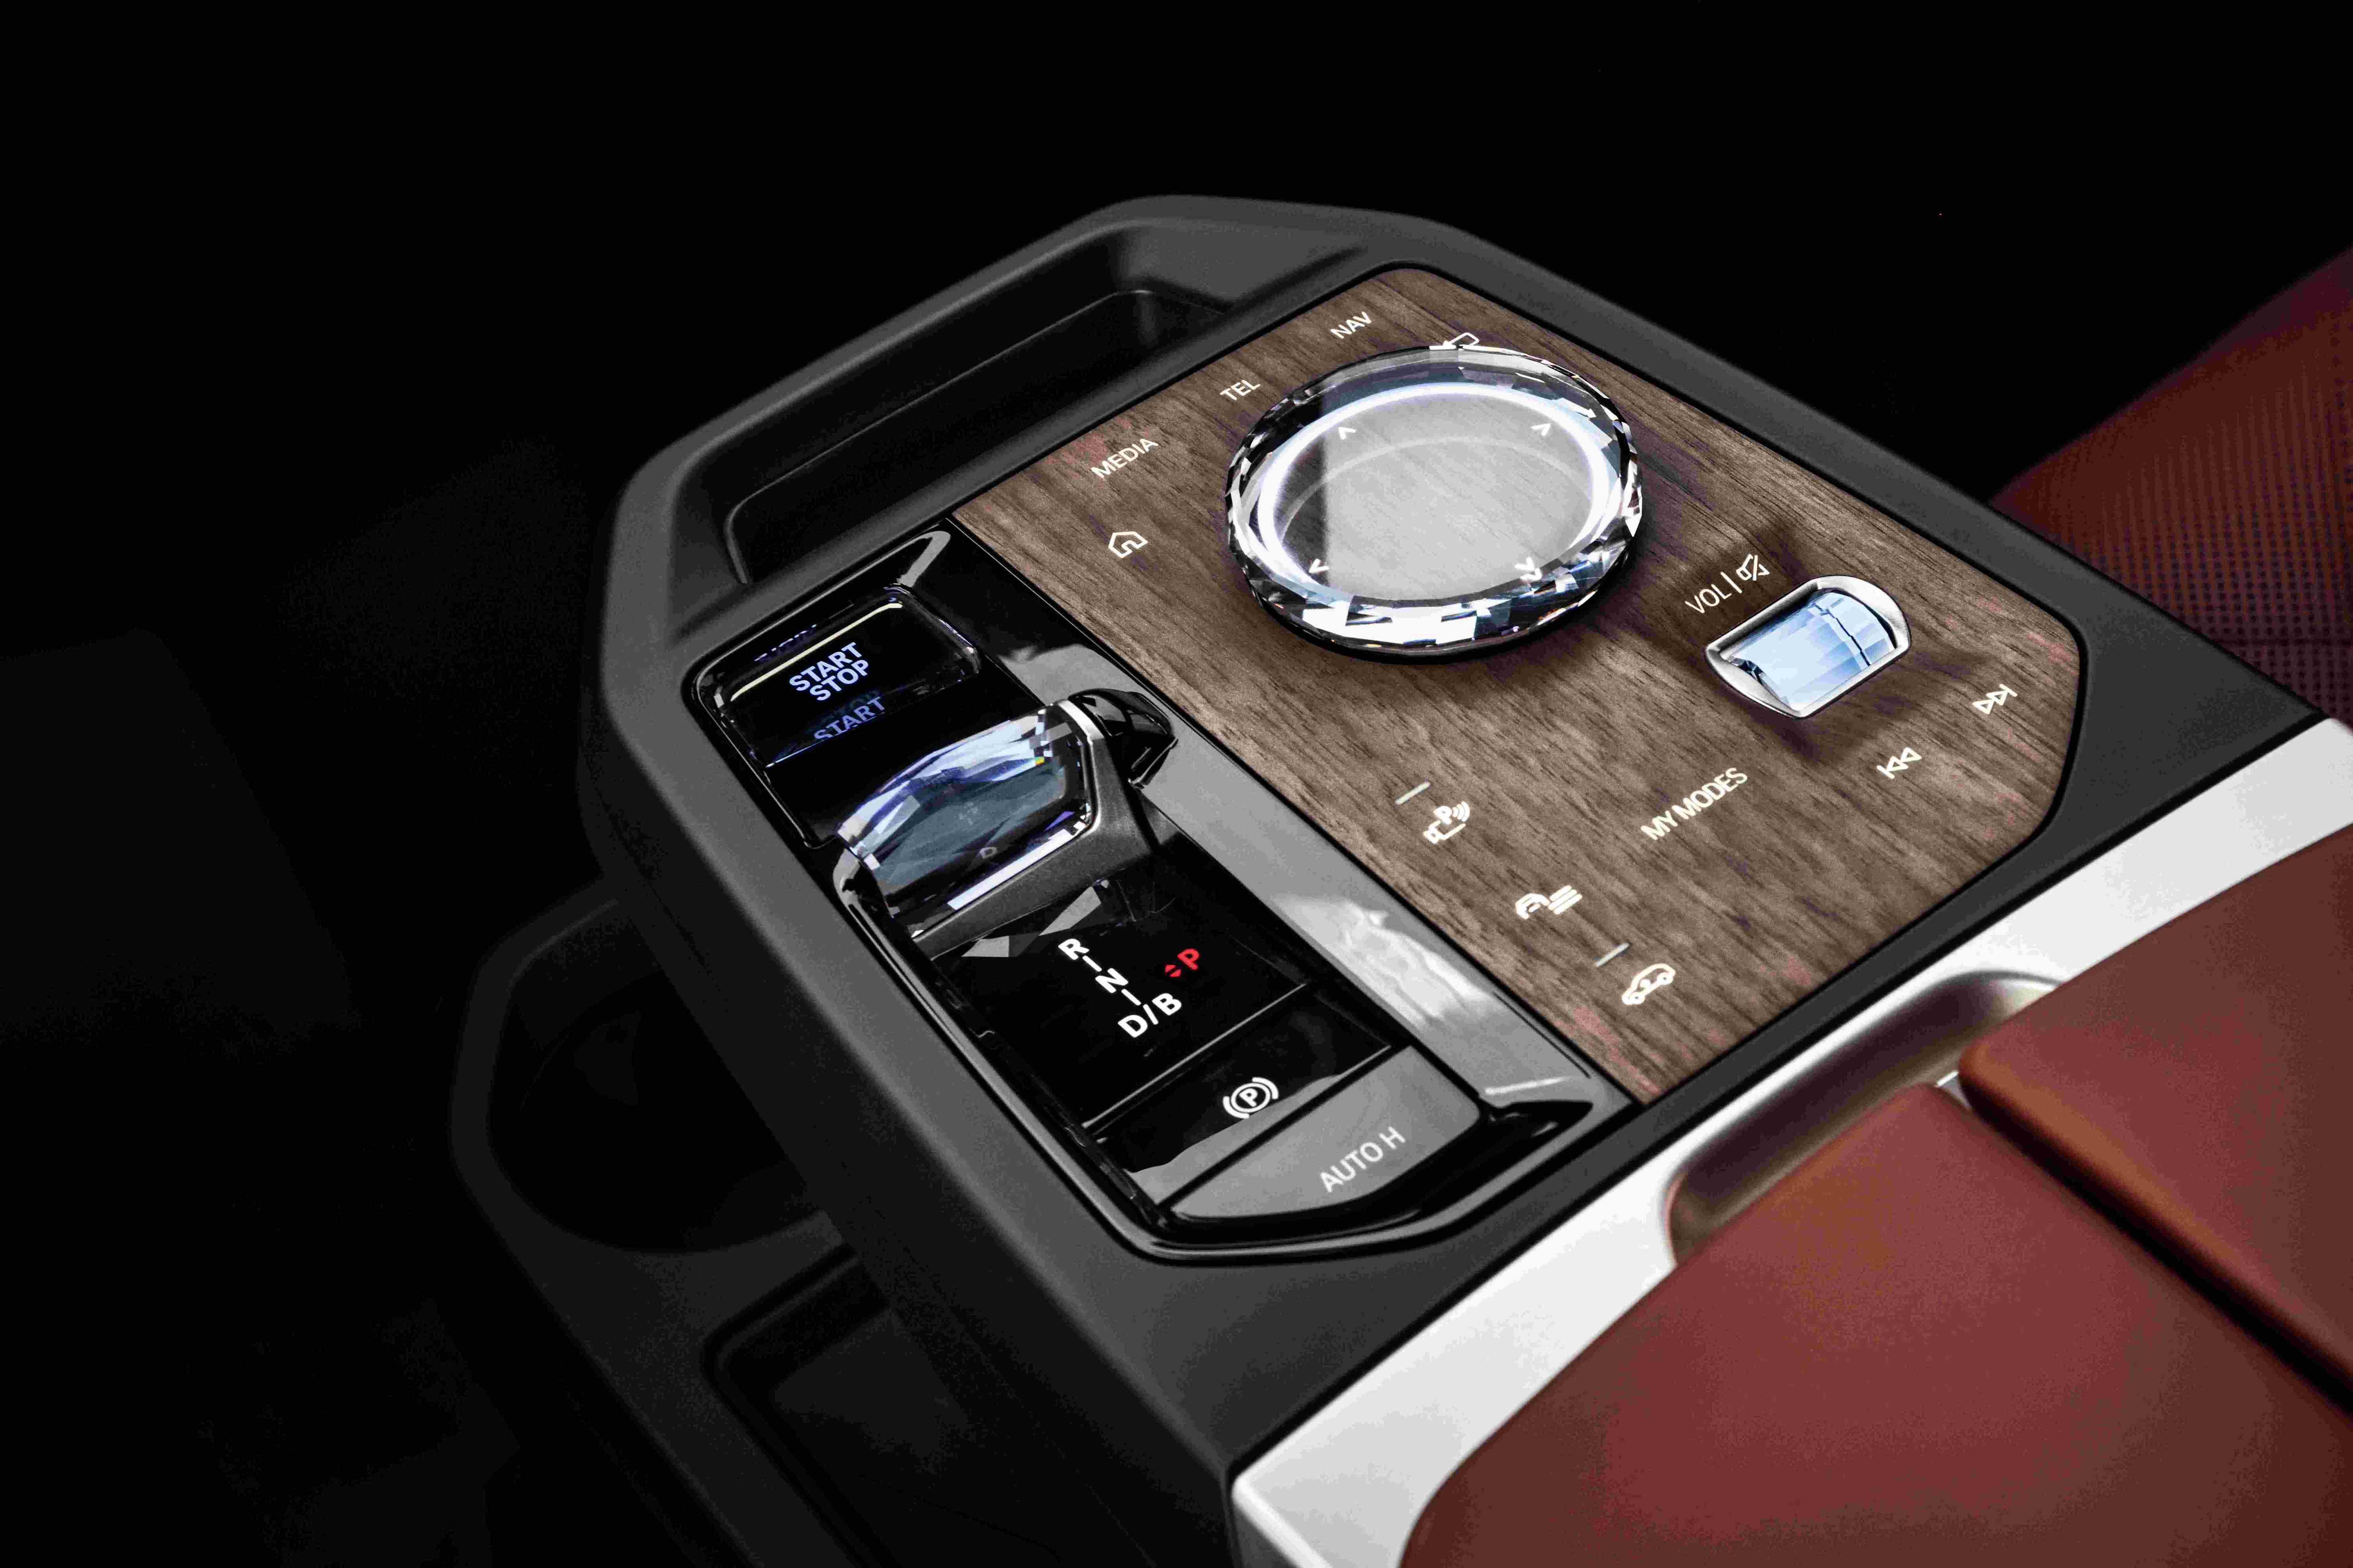 超越电动 引领未来豪华——创新BMW iX广州车展正式上市